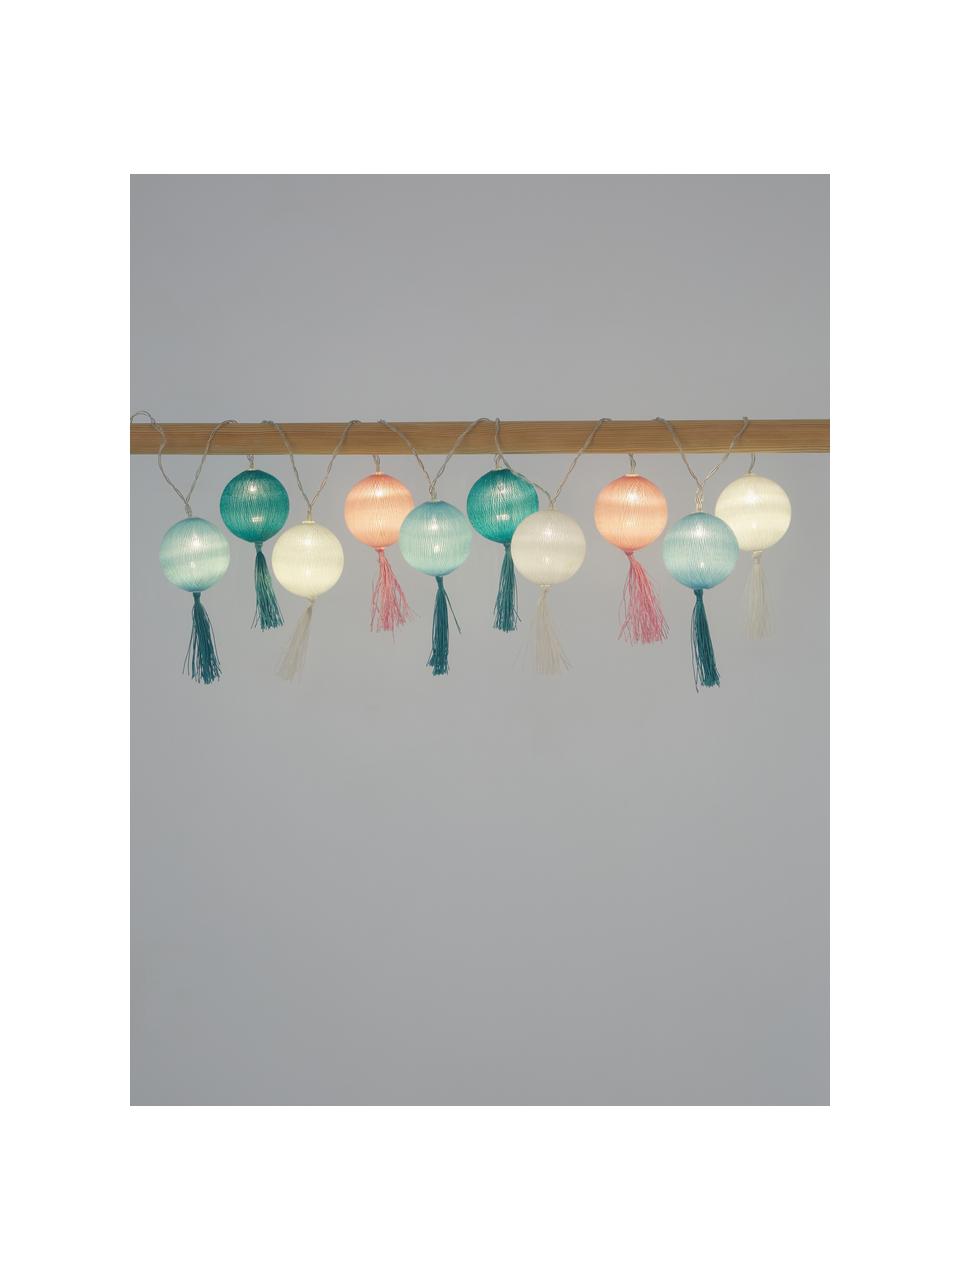 Světelný LED řetěz Jolly Tassel, 185 cm, Bílá, růžová, odstíny modré, D 185 cm, 10 lampionů